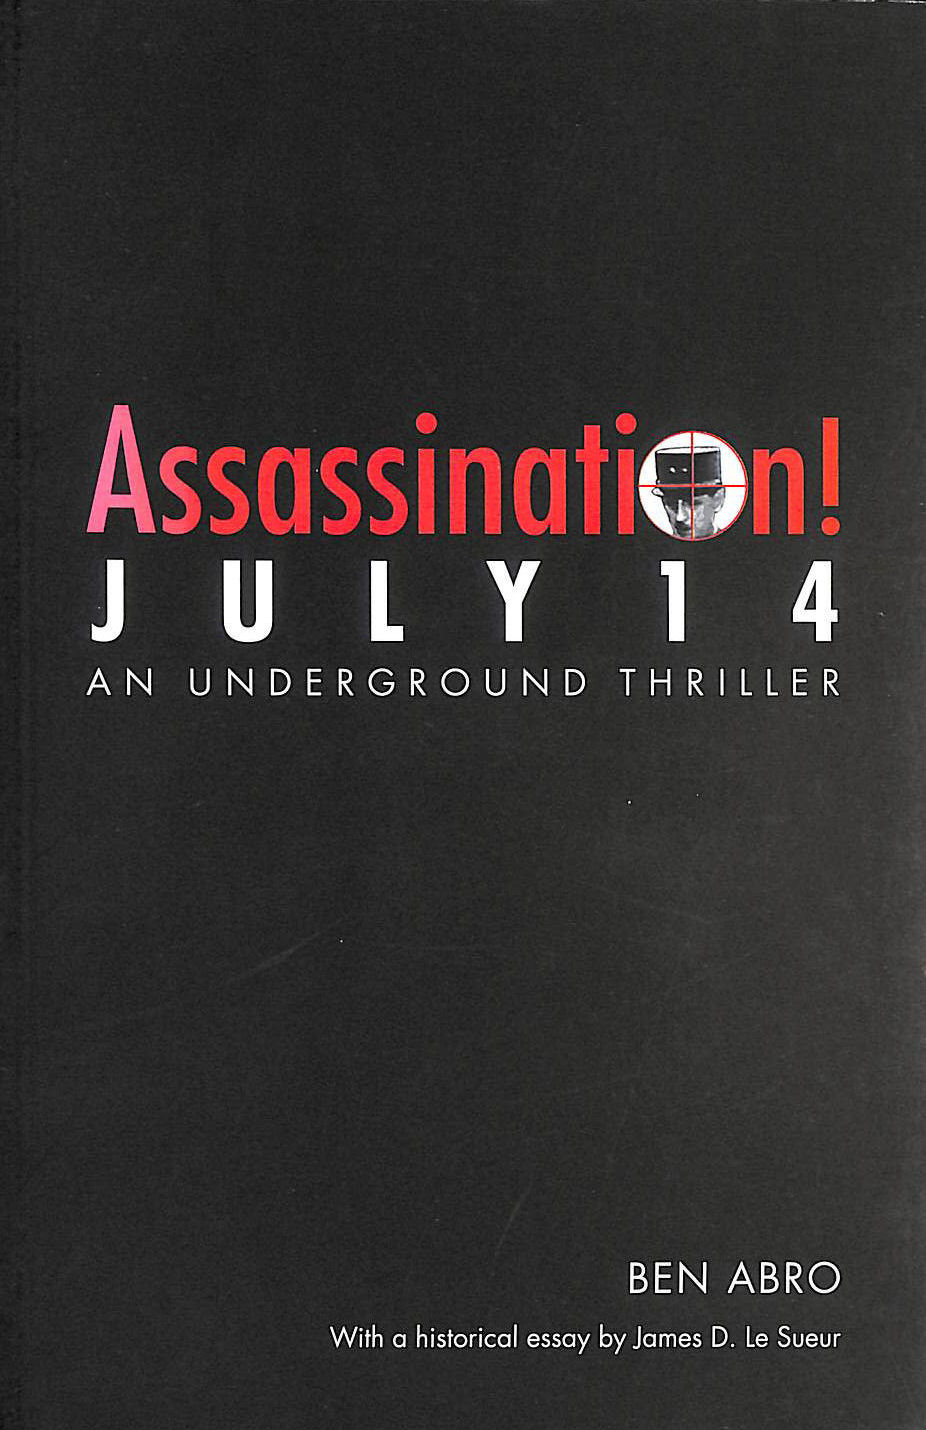 ABRO, BEN; LE SUEUR, JAMES D. [FOREWORD] - Assassination! July 14